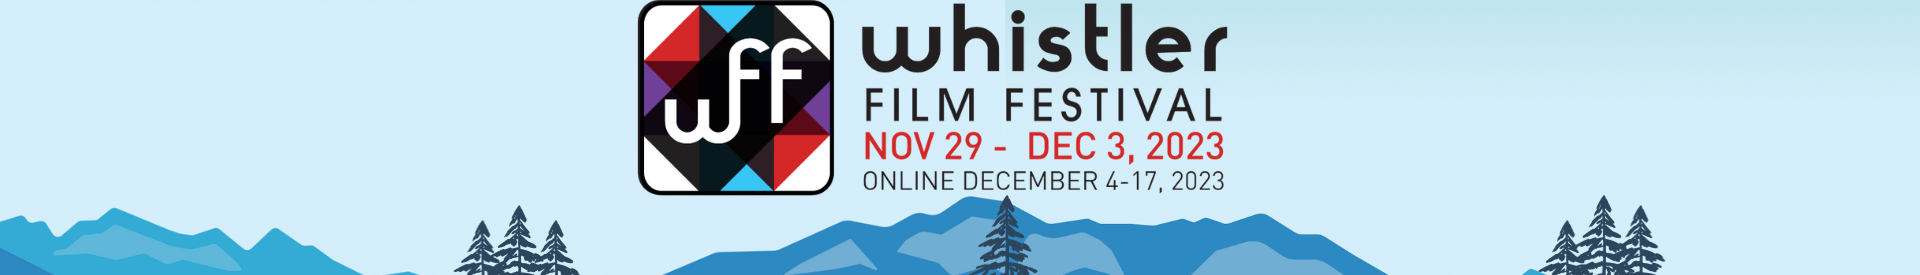 Whistler Film Festival 2023